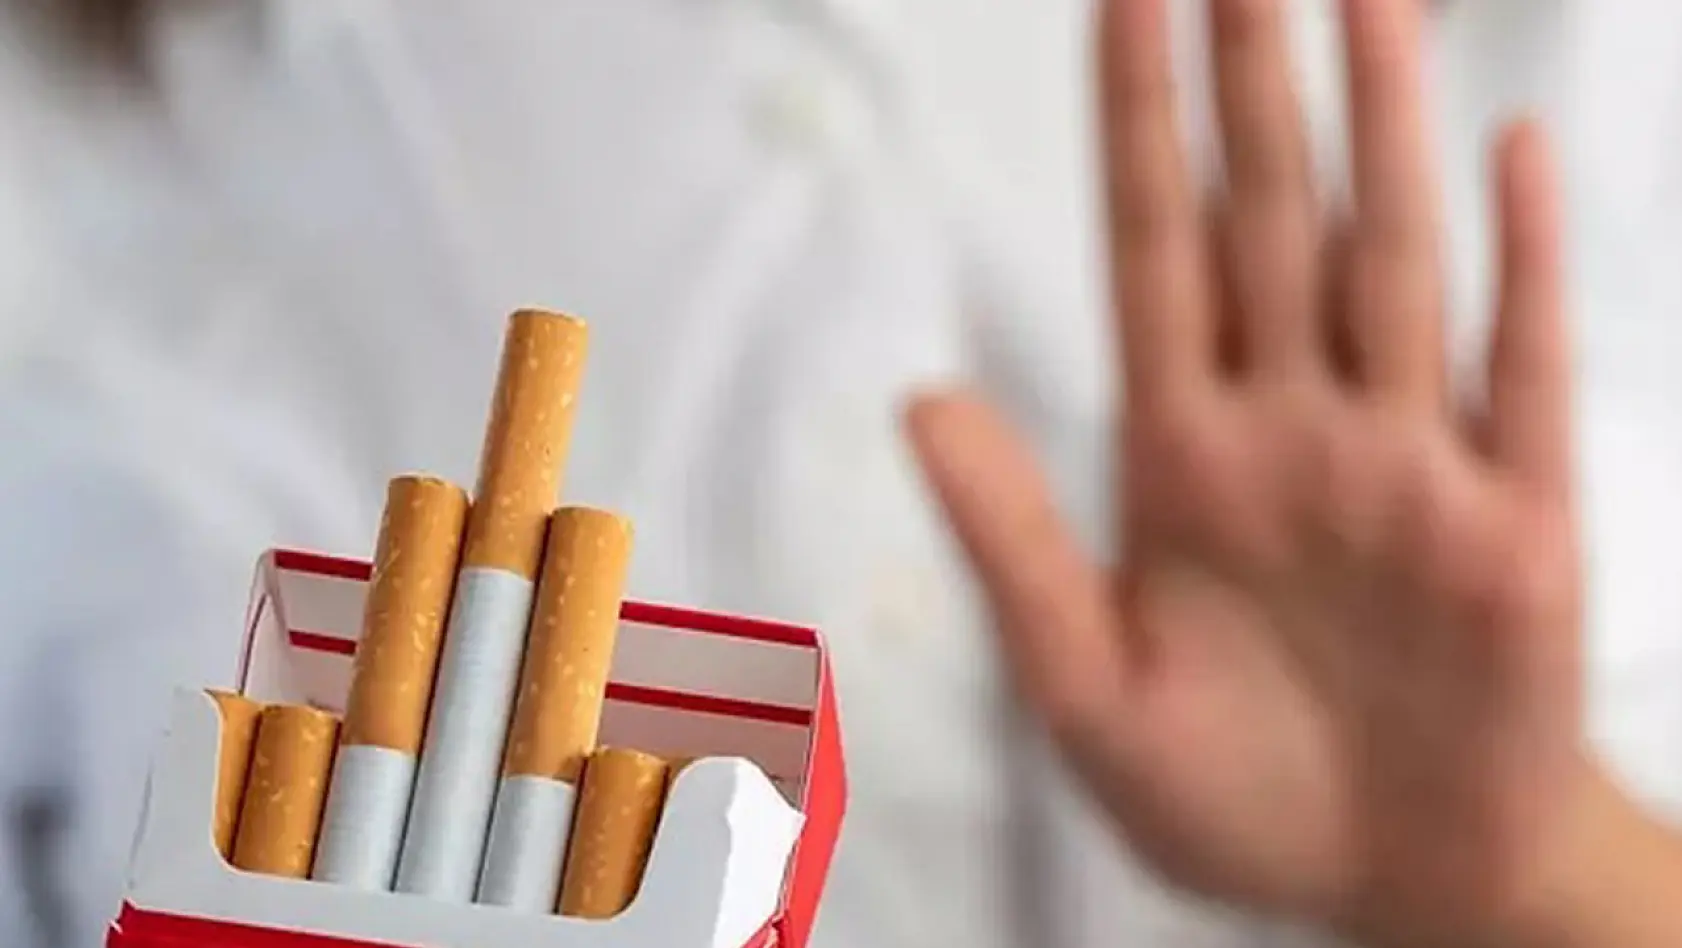 Dünyanın En Sert Tütün Yasası Onaylandı! 2009'dan Sonra Doğanlara Ömür Boyu Sigara Satılmayacak!